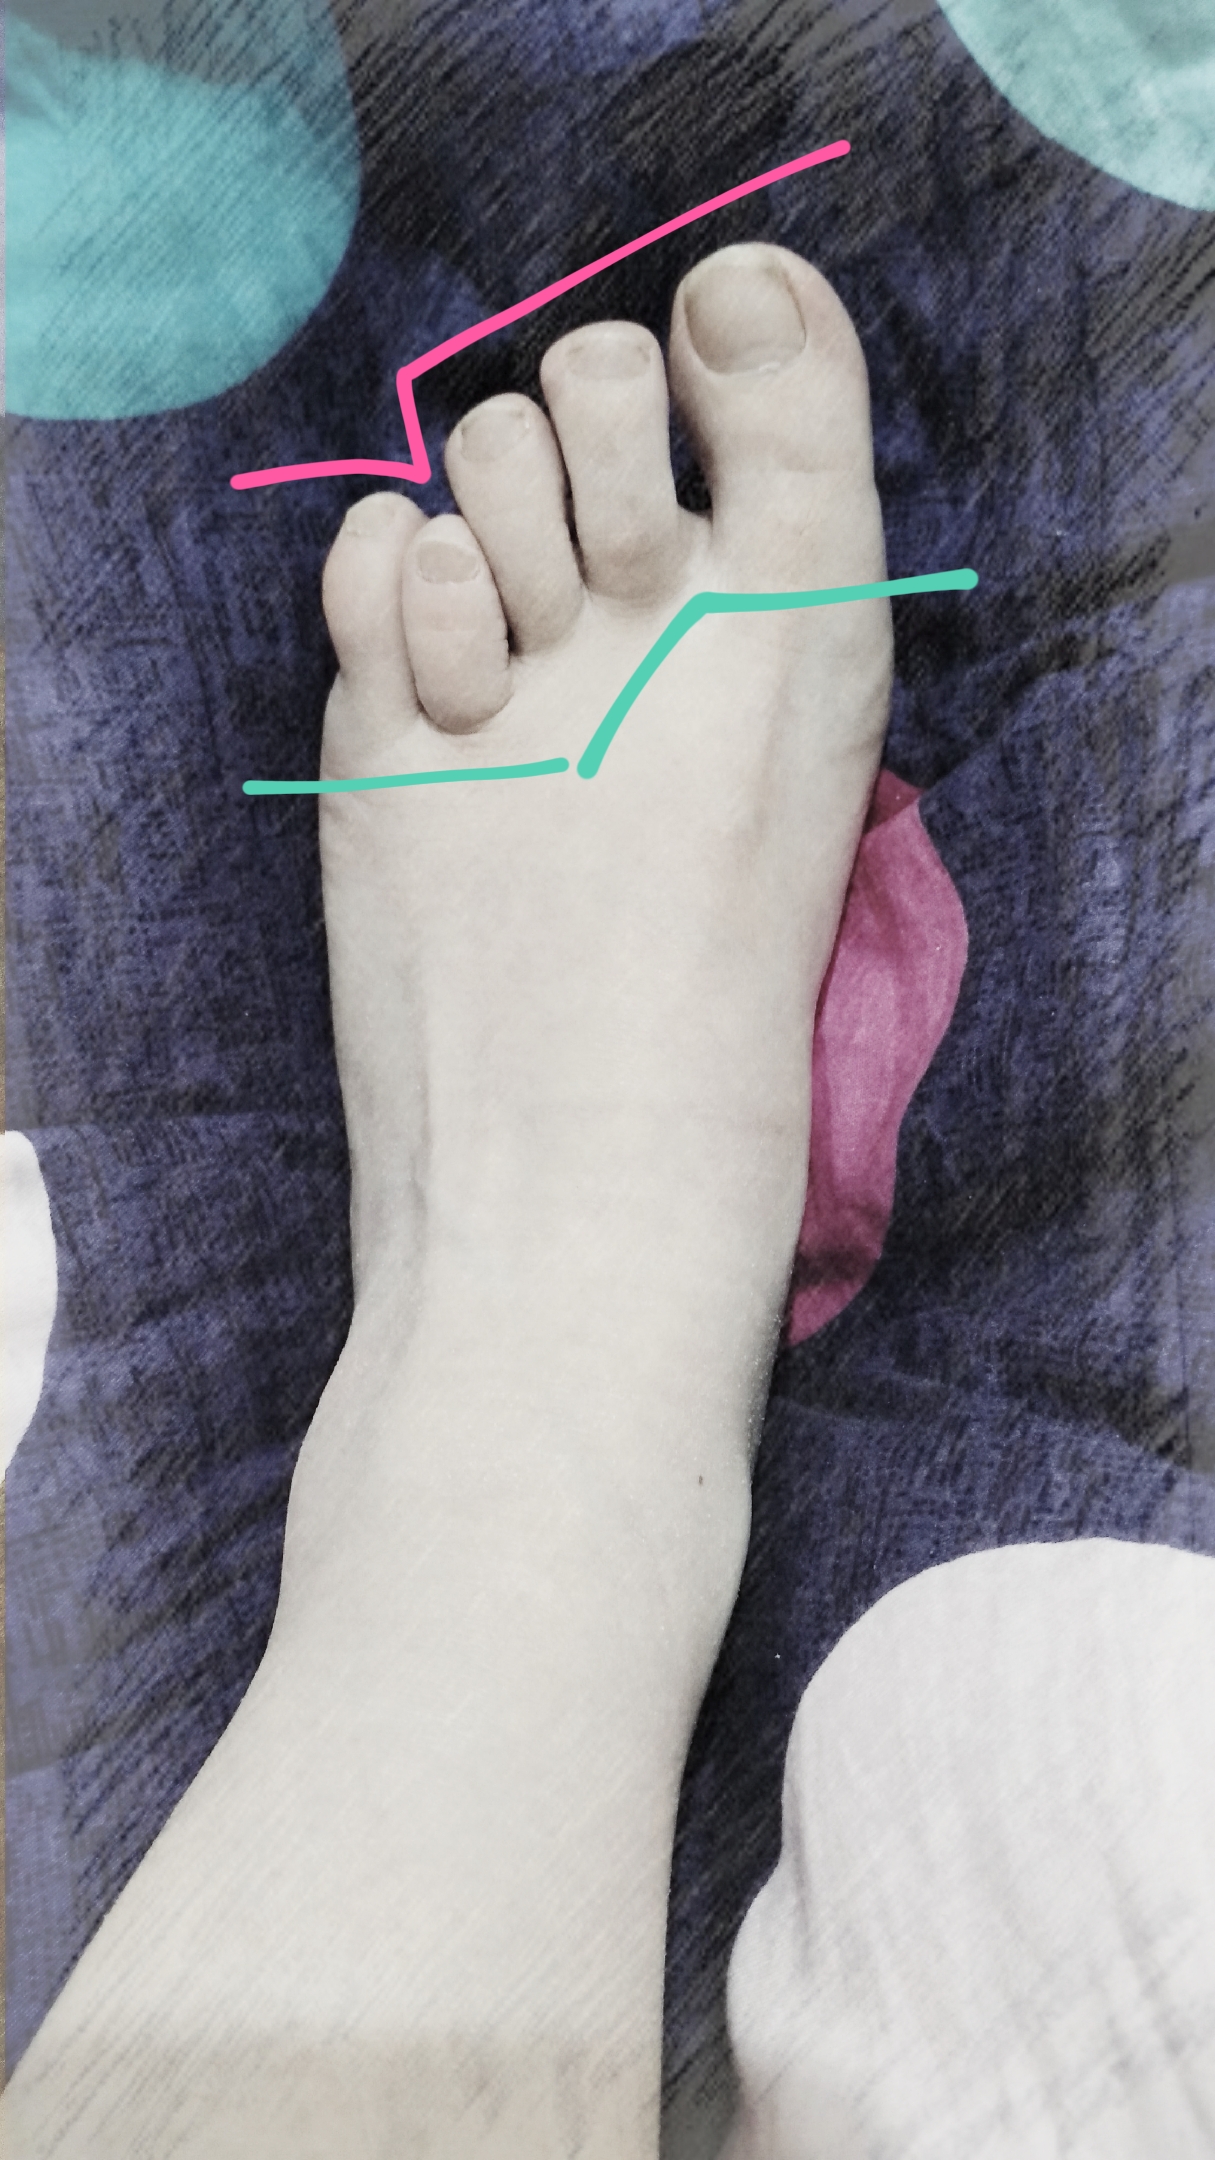 作为一个女生，脚拇指外翻是一种怎样的体验？ - 知乎